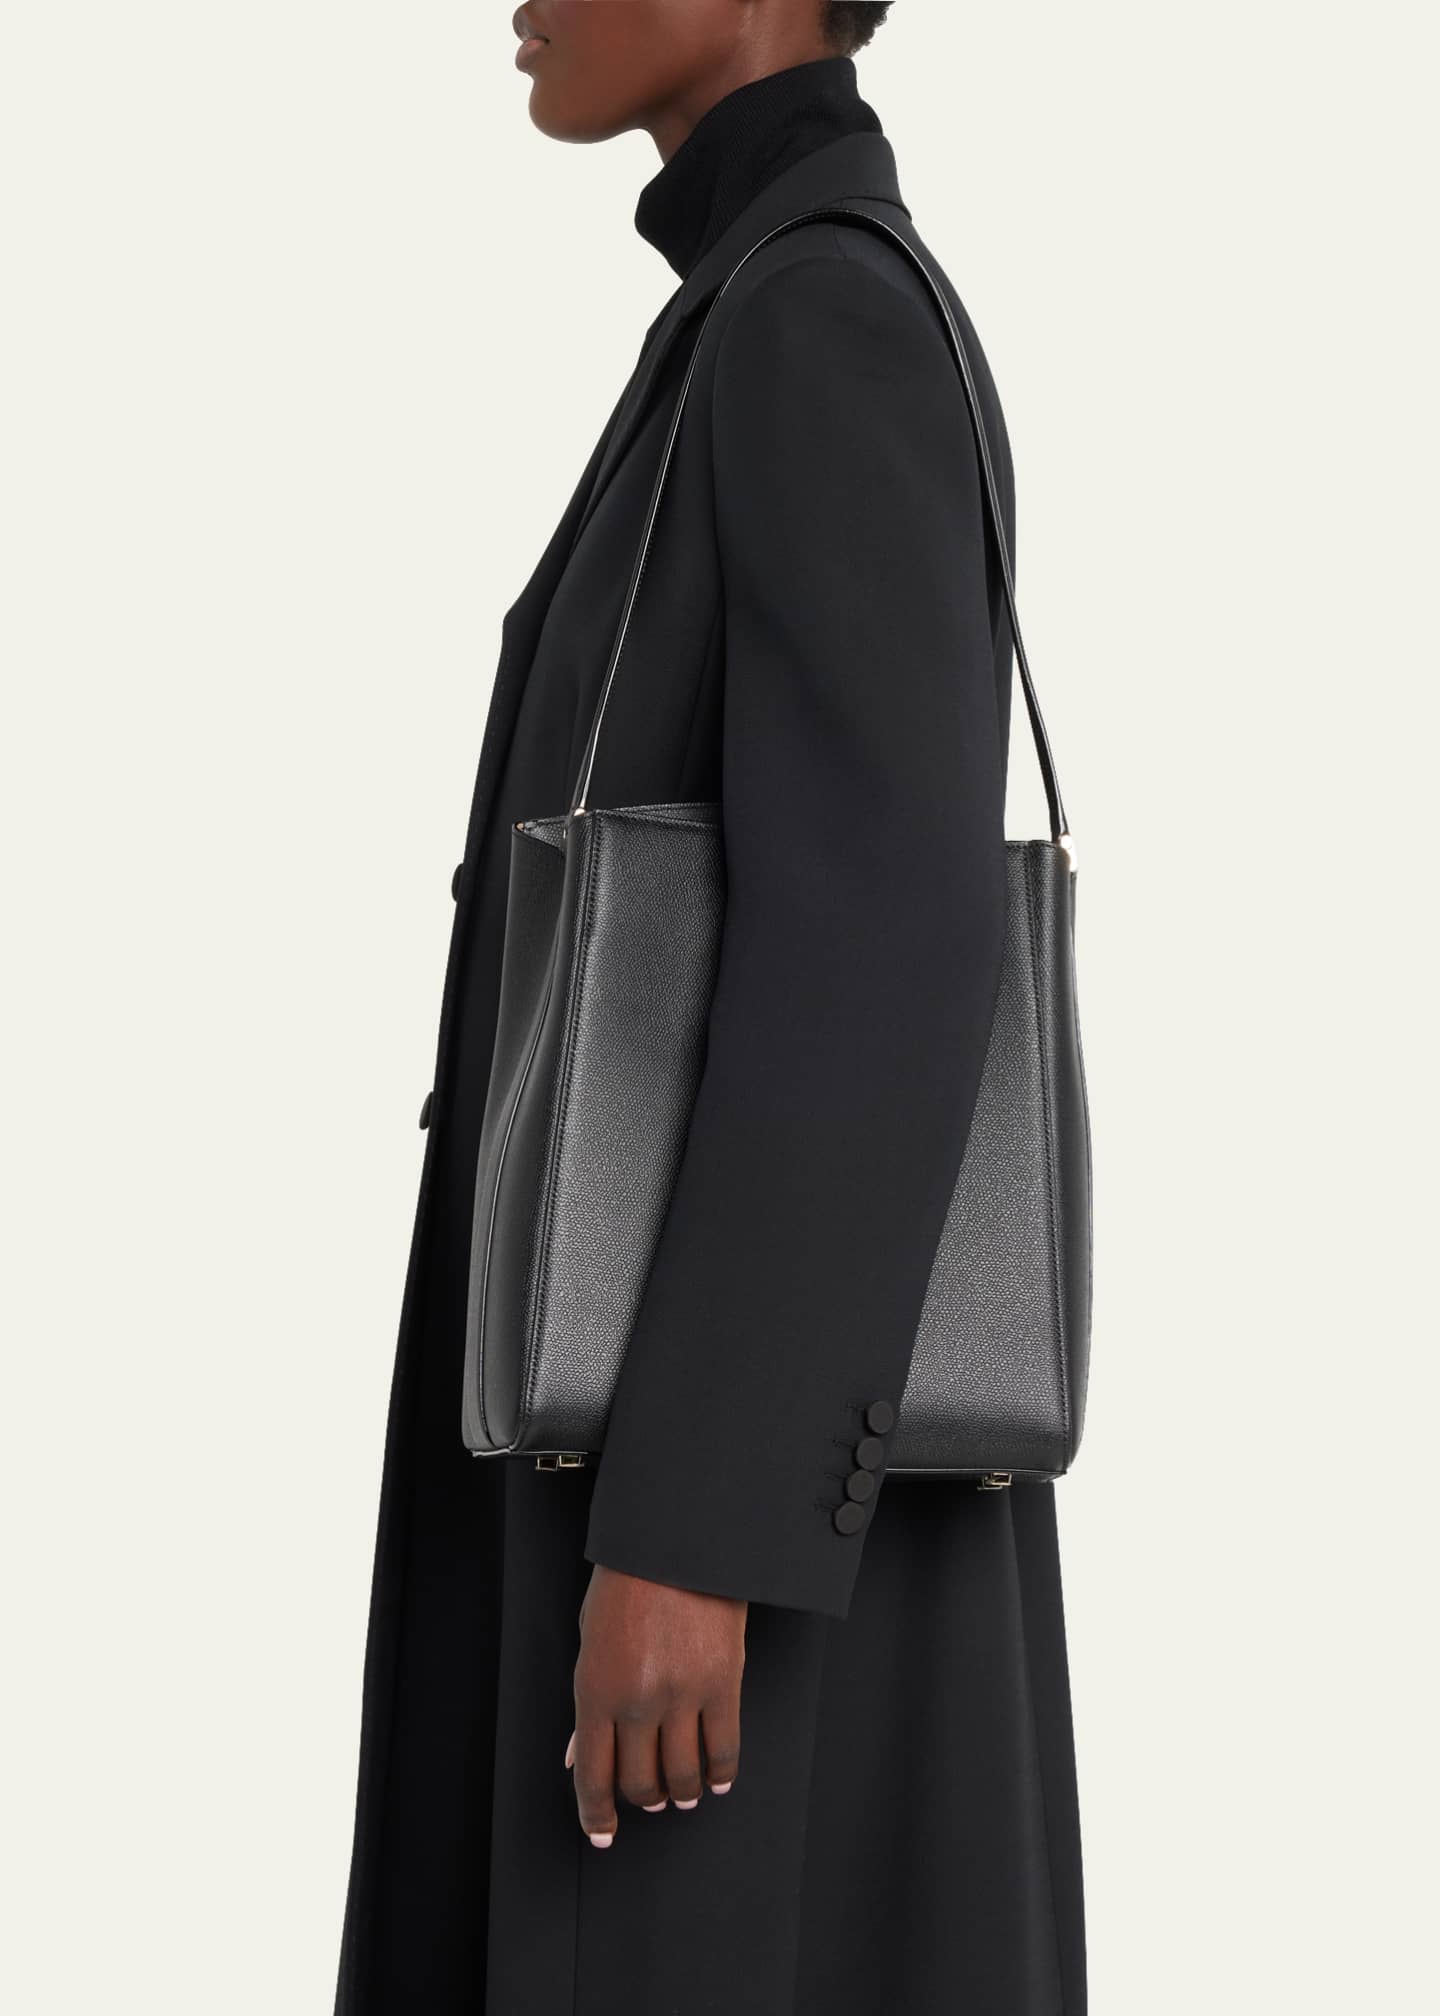 Brera Tote, Women's Fashion, Bags & Wallets, Cross-body Bags on